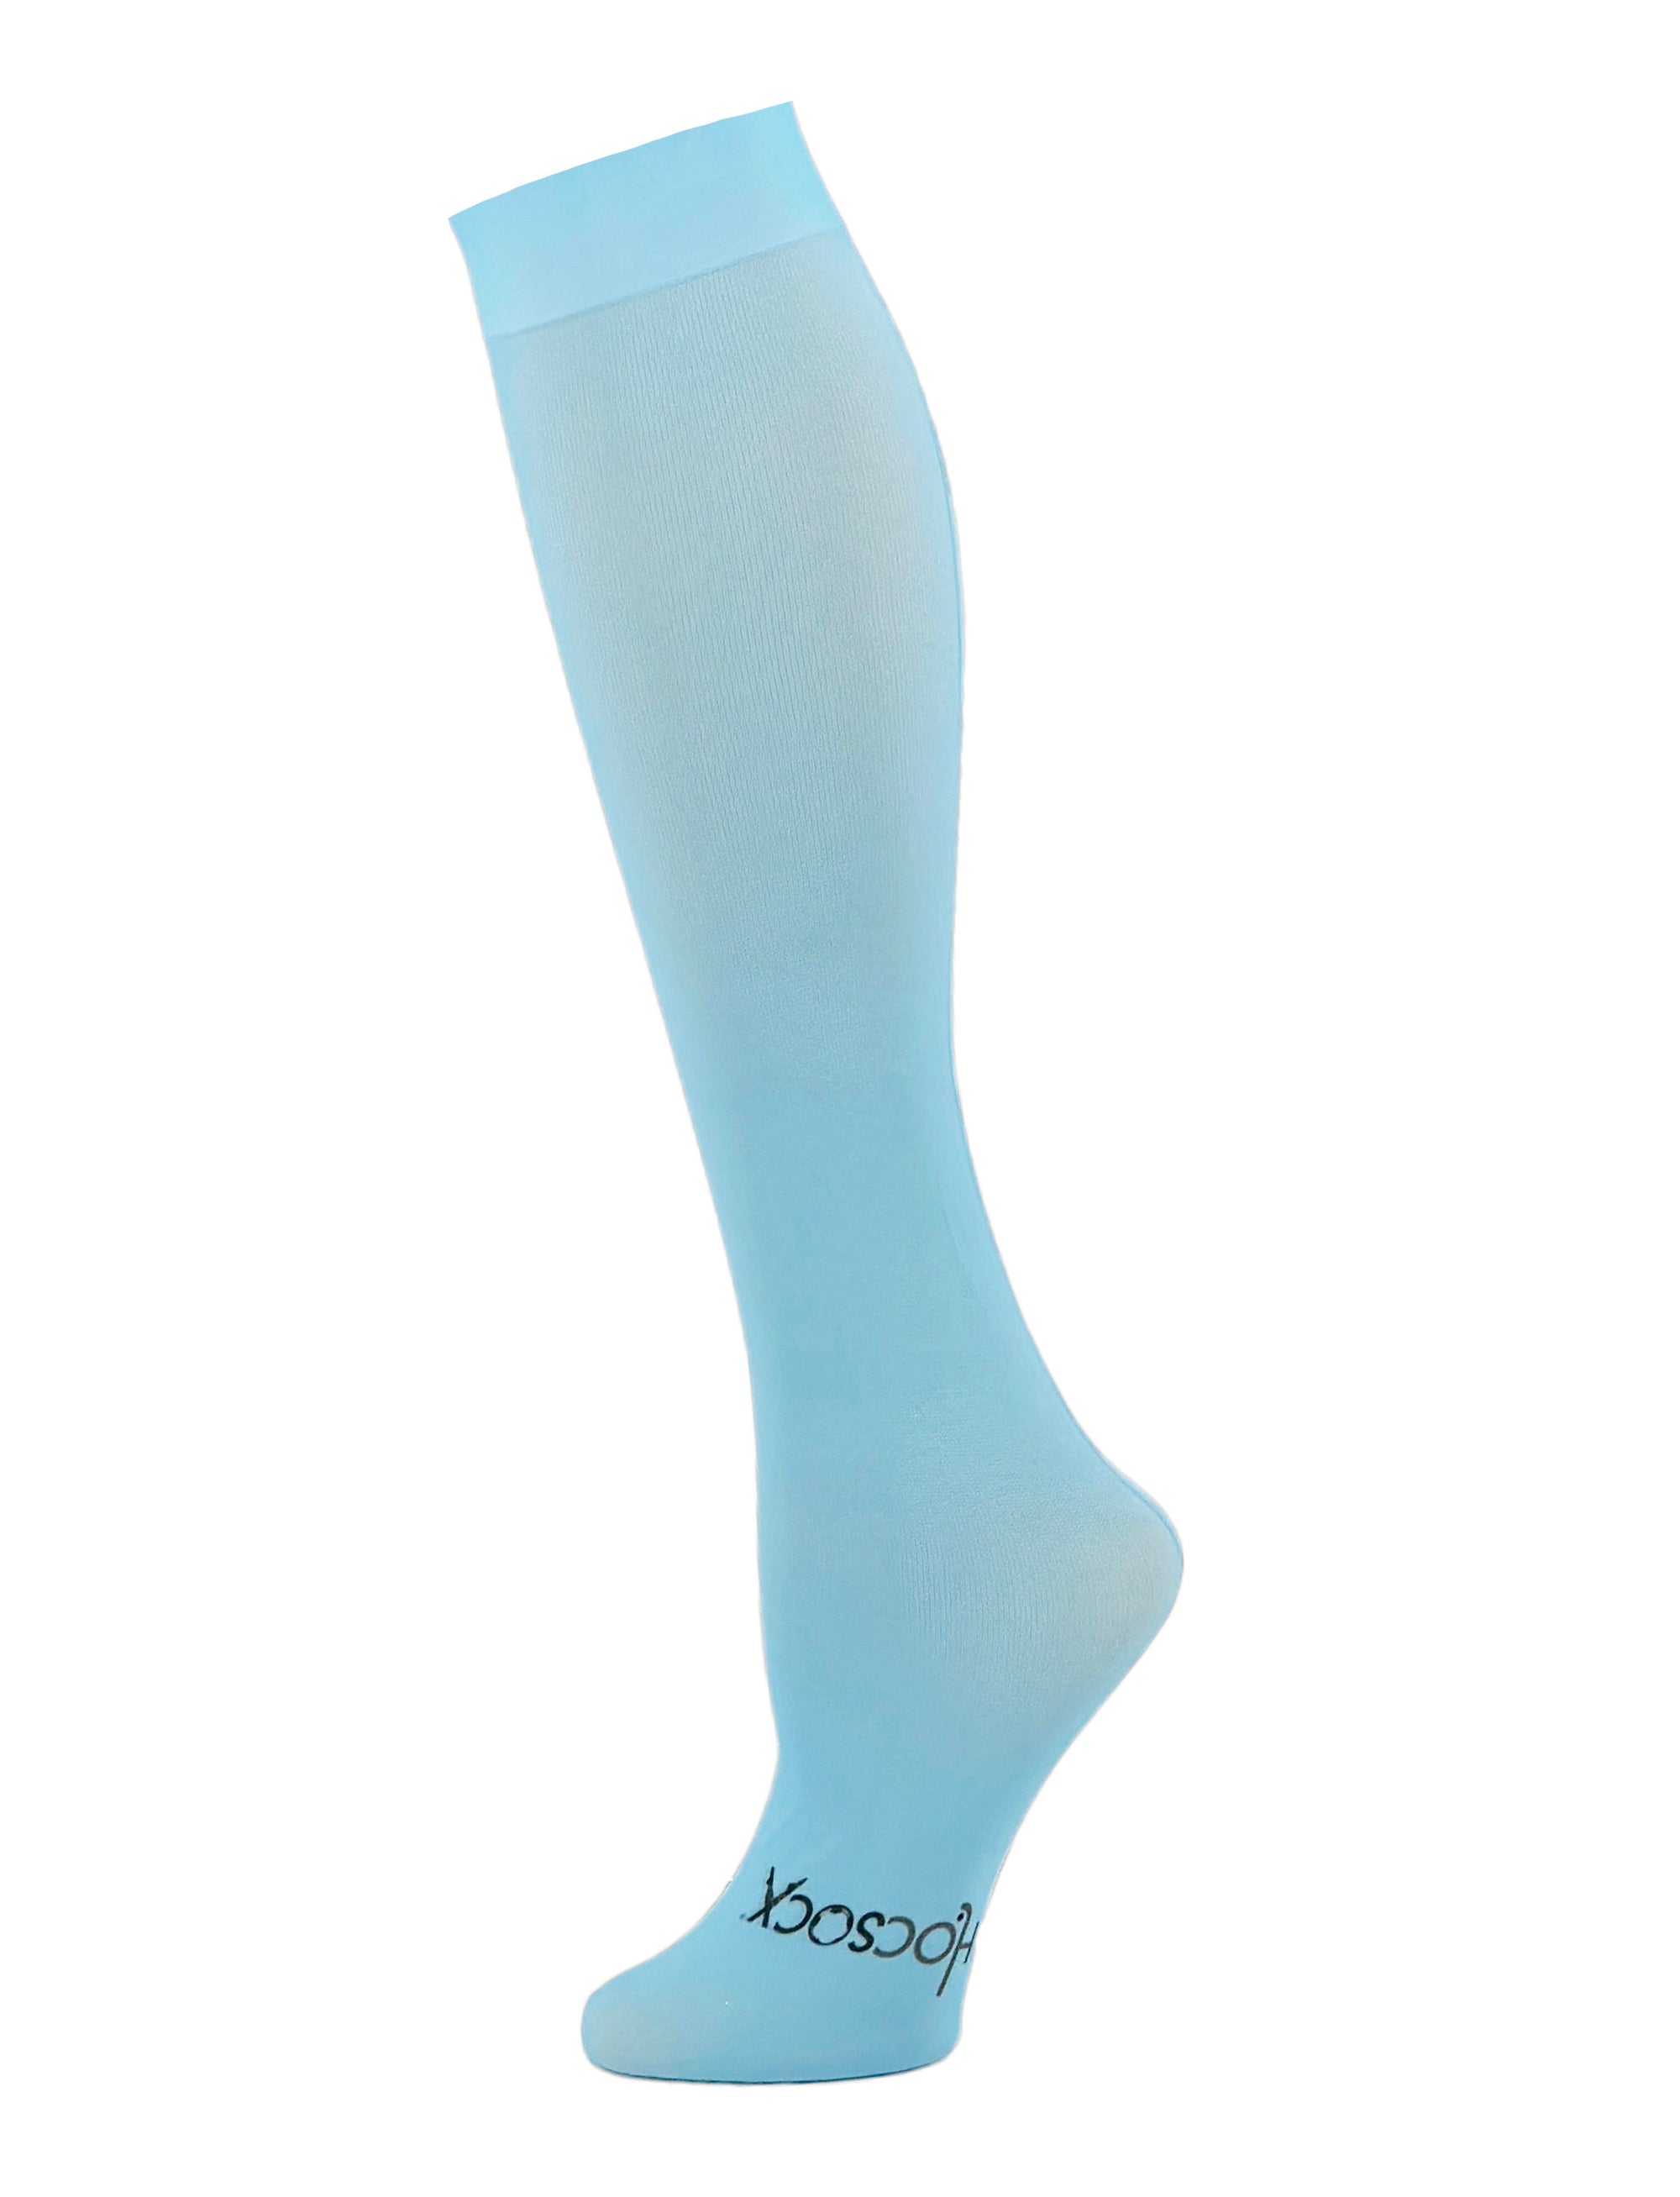 Carolina Blue Socks